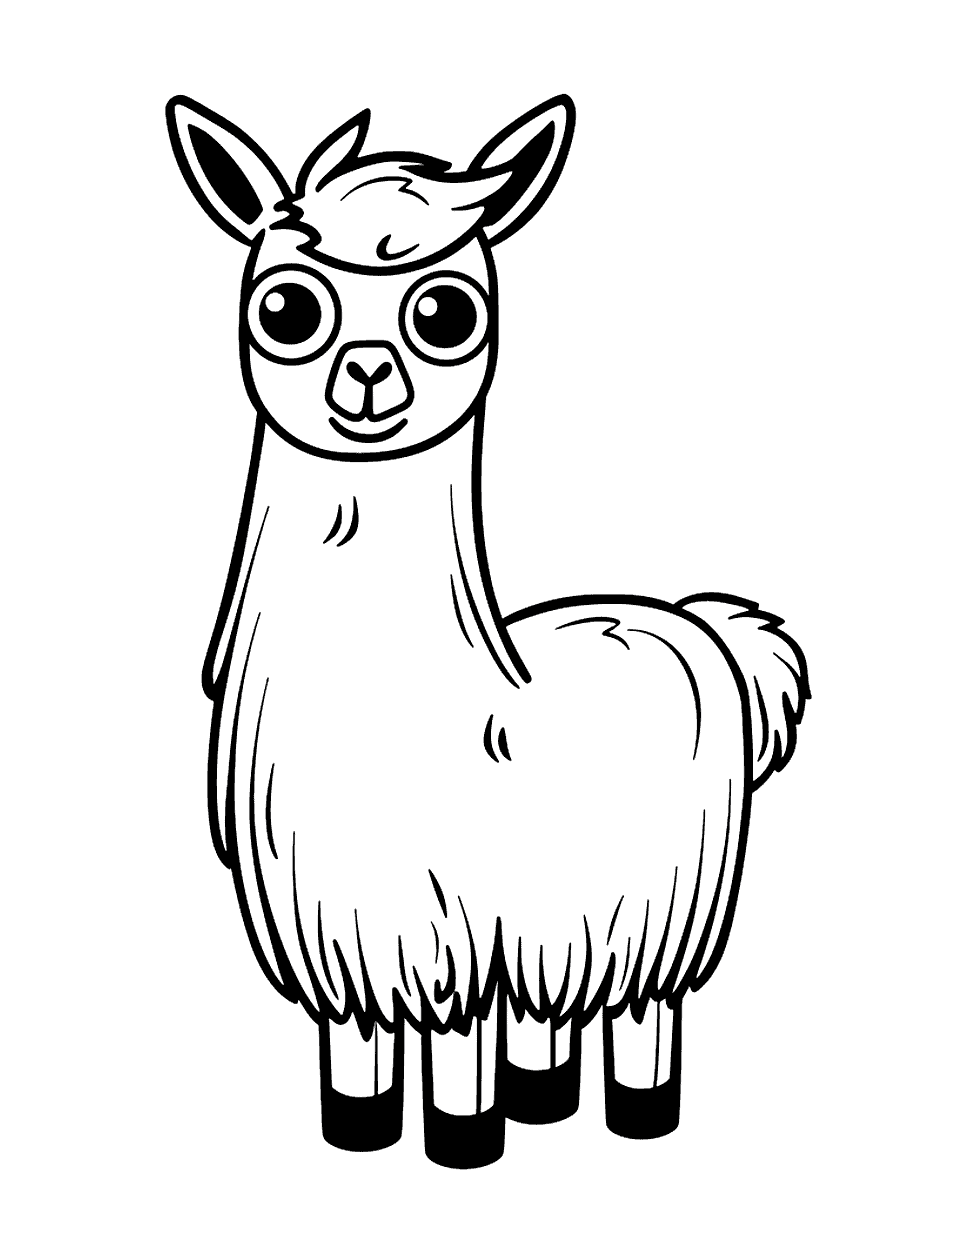 Kawaii Llama Coloring Page - A super adorable, kawaii-style llama with big eyes.